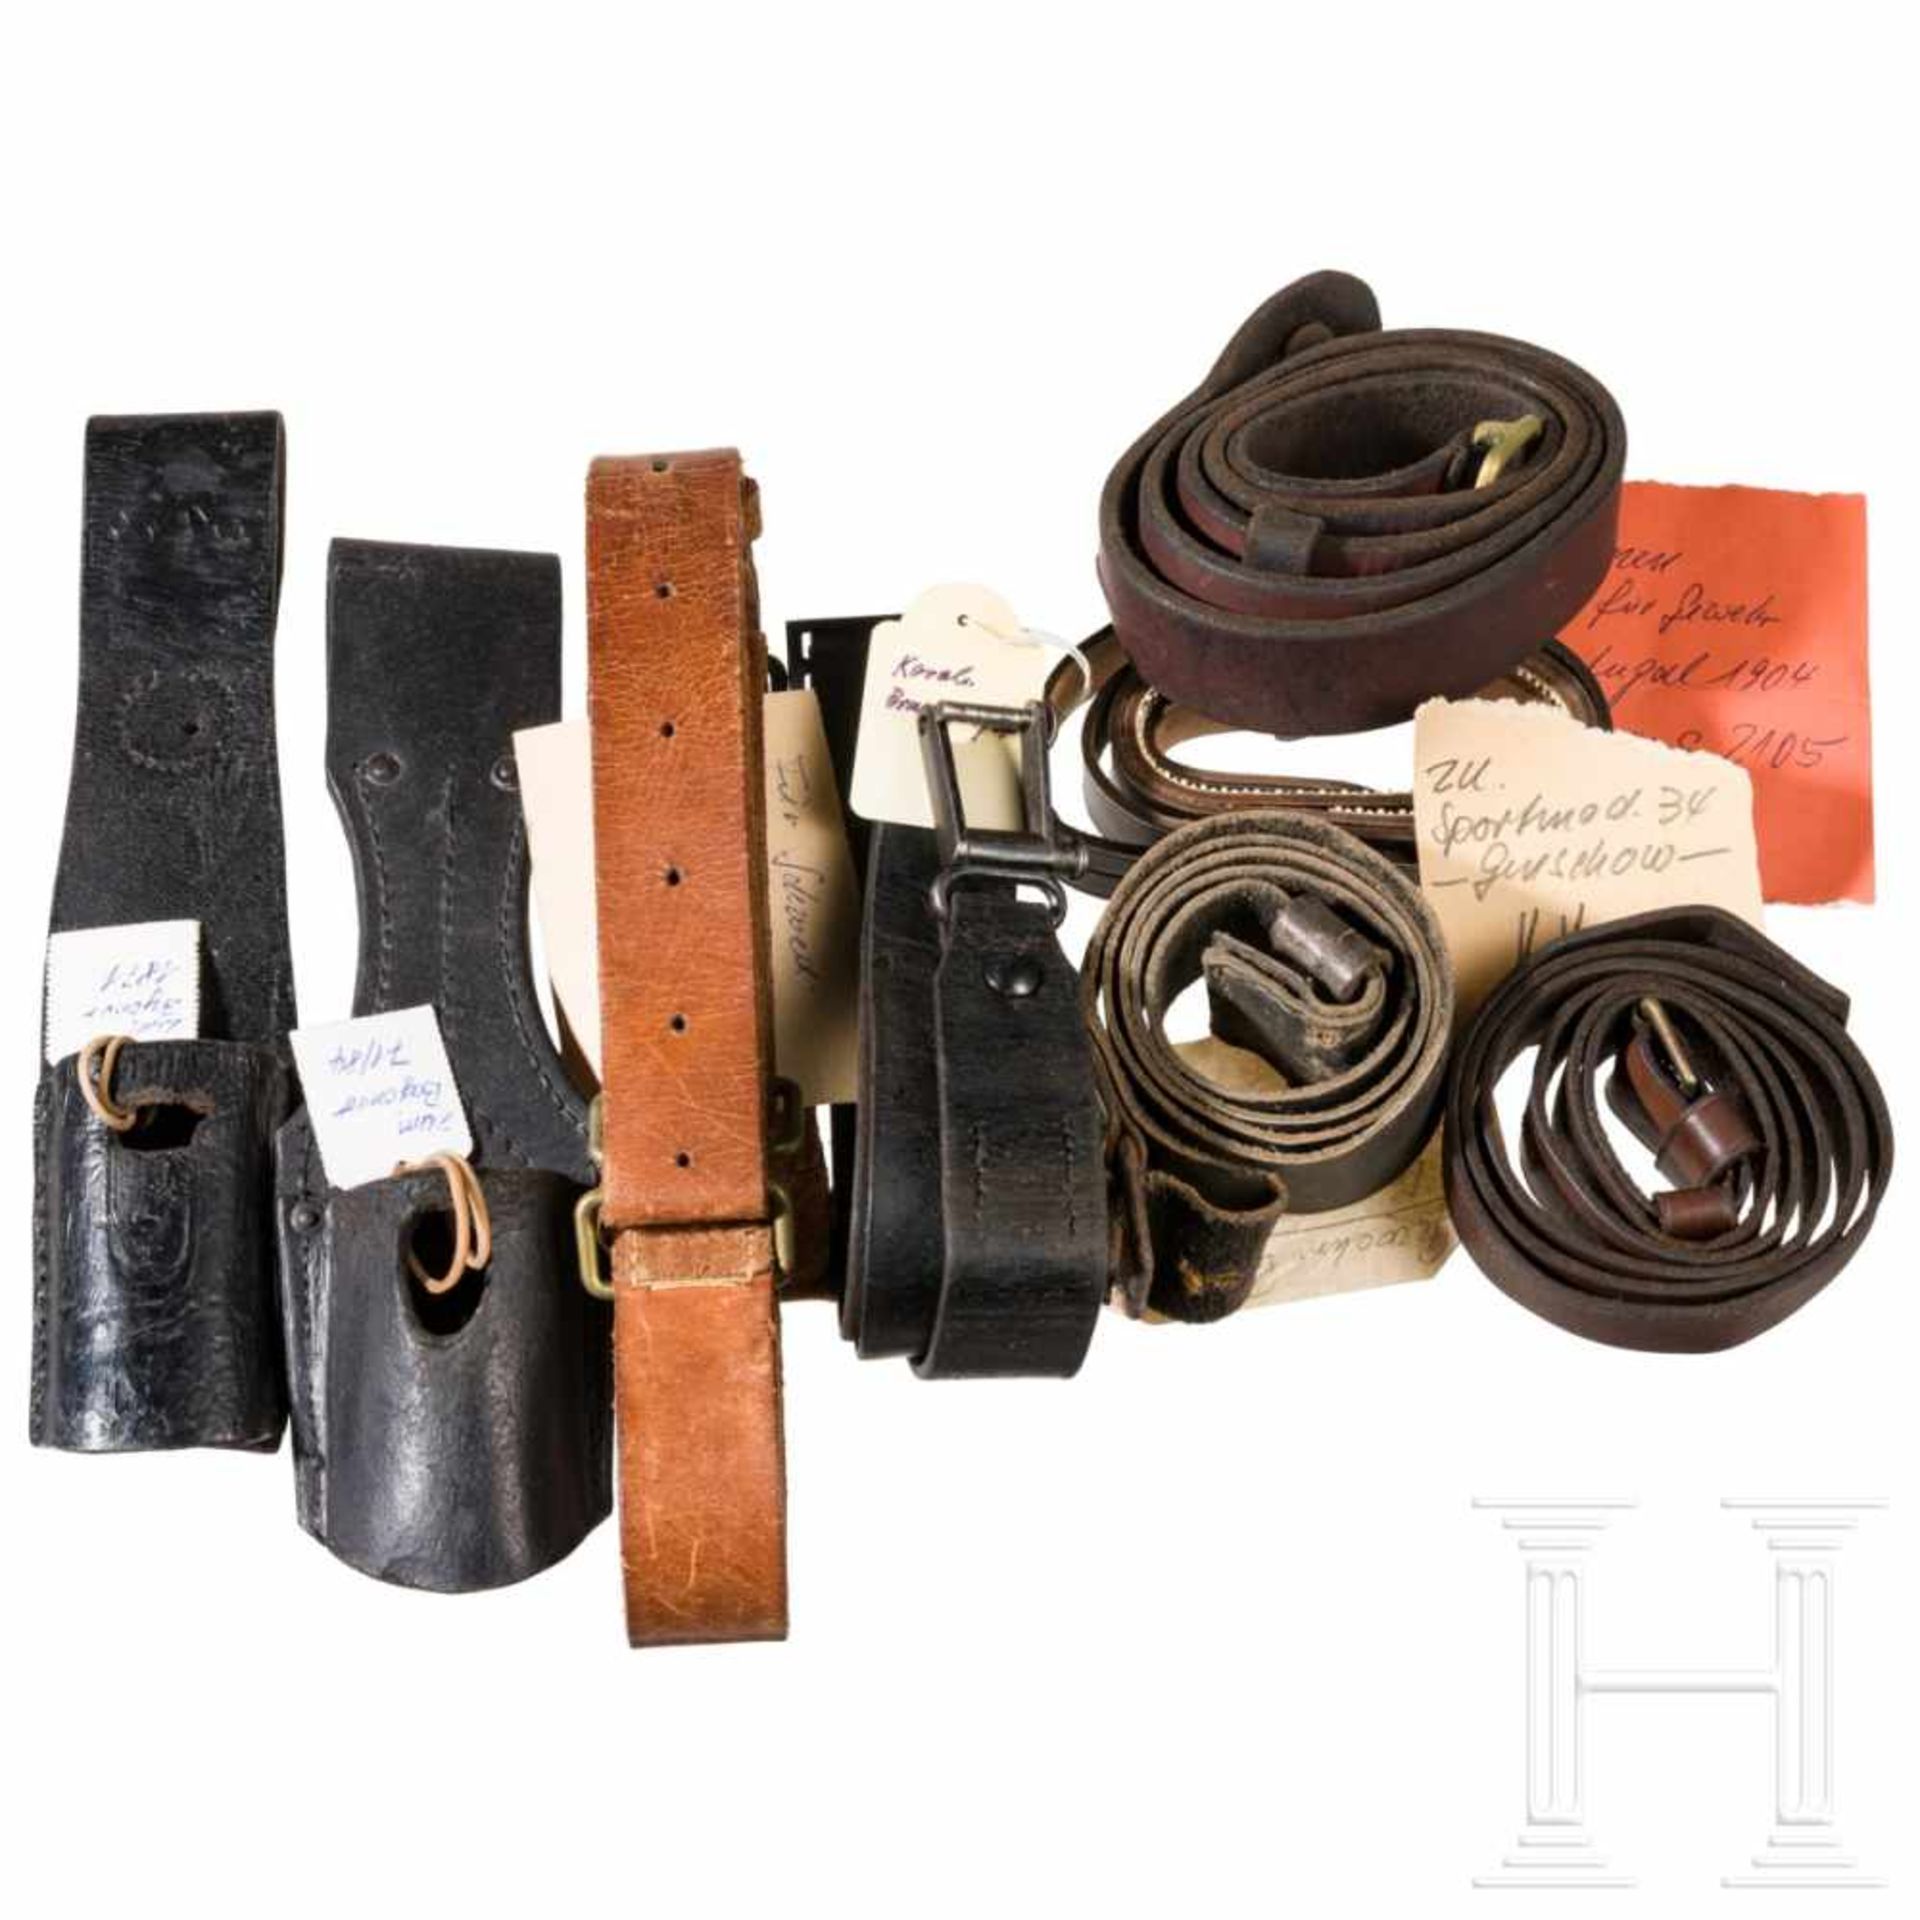 A group of gun straps and coupling shoesDerbe Lederriemen, Schnallen aus Stahl oder Buntmetall. 15